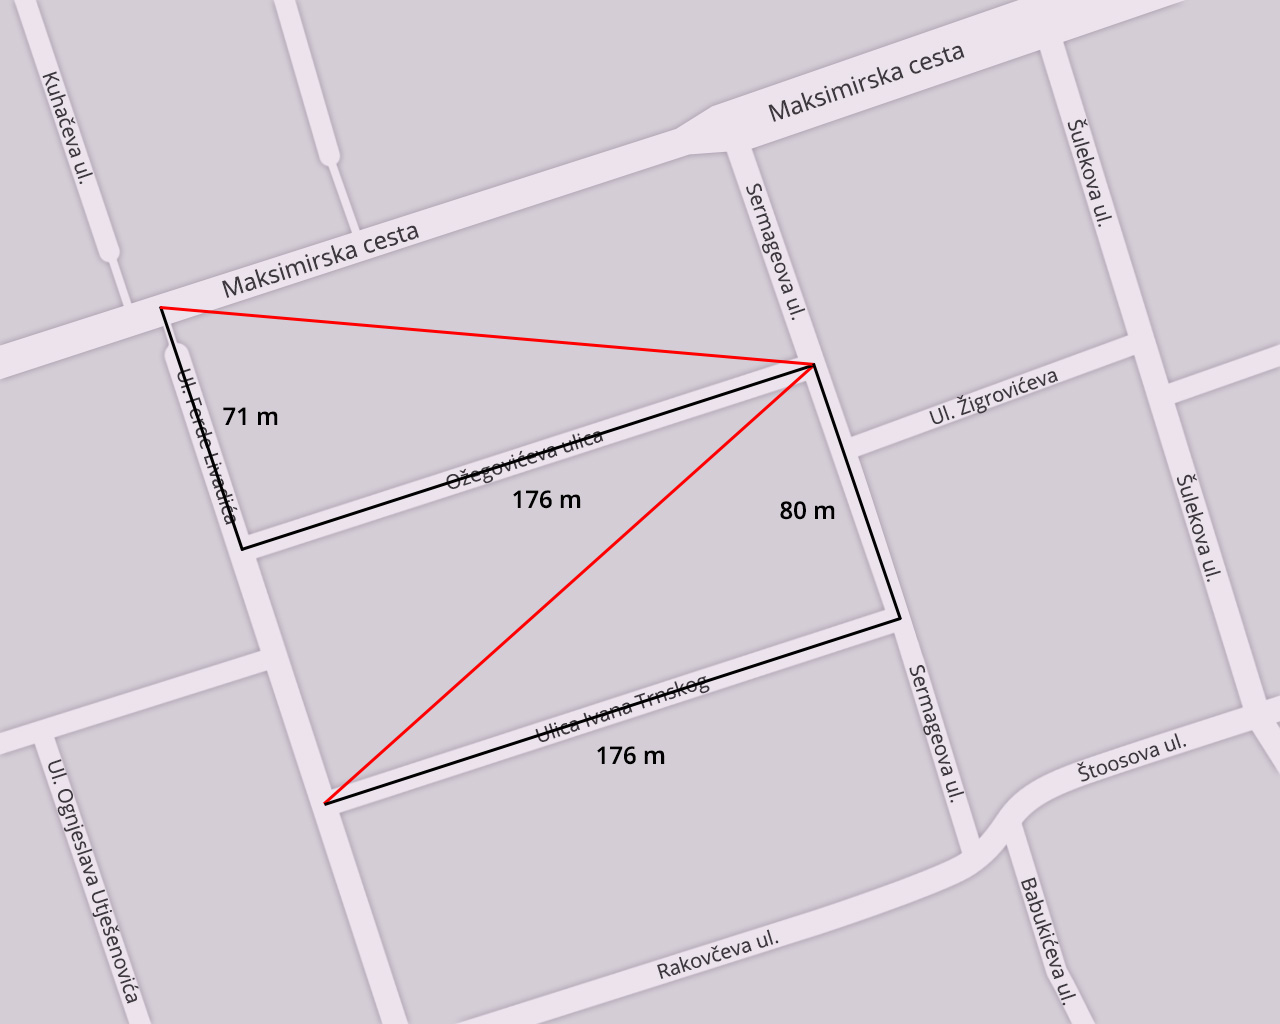 Slika plana dijela grada opisanog u zadatku.